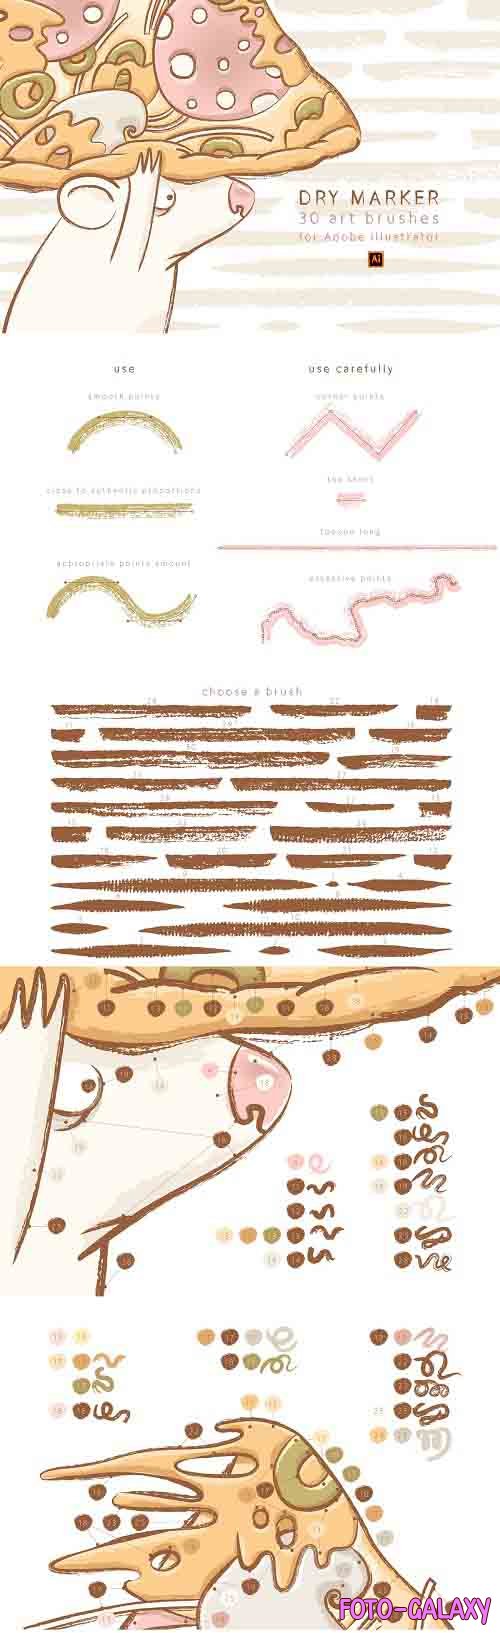 Dry Marker brushes for Illustrator - 4730357